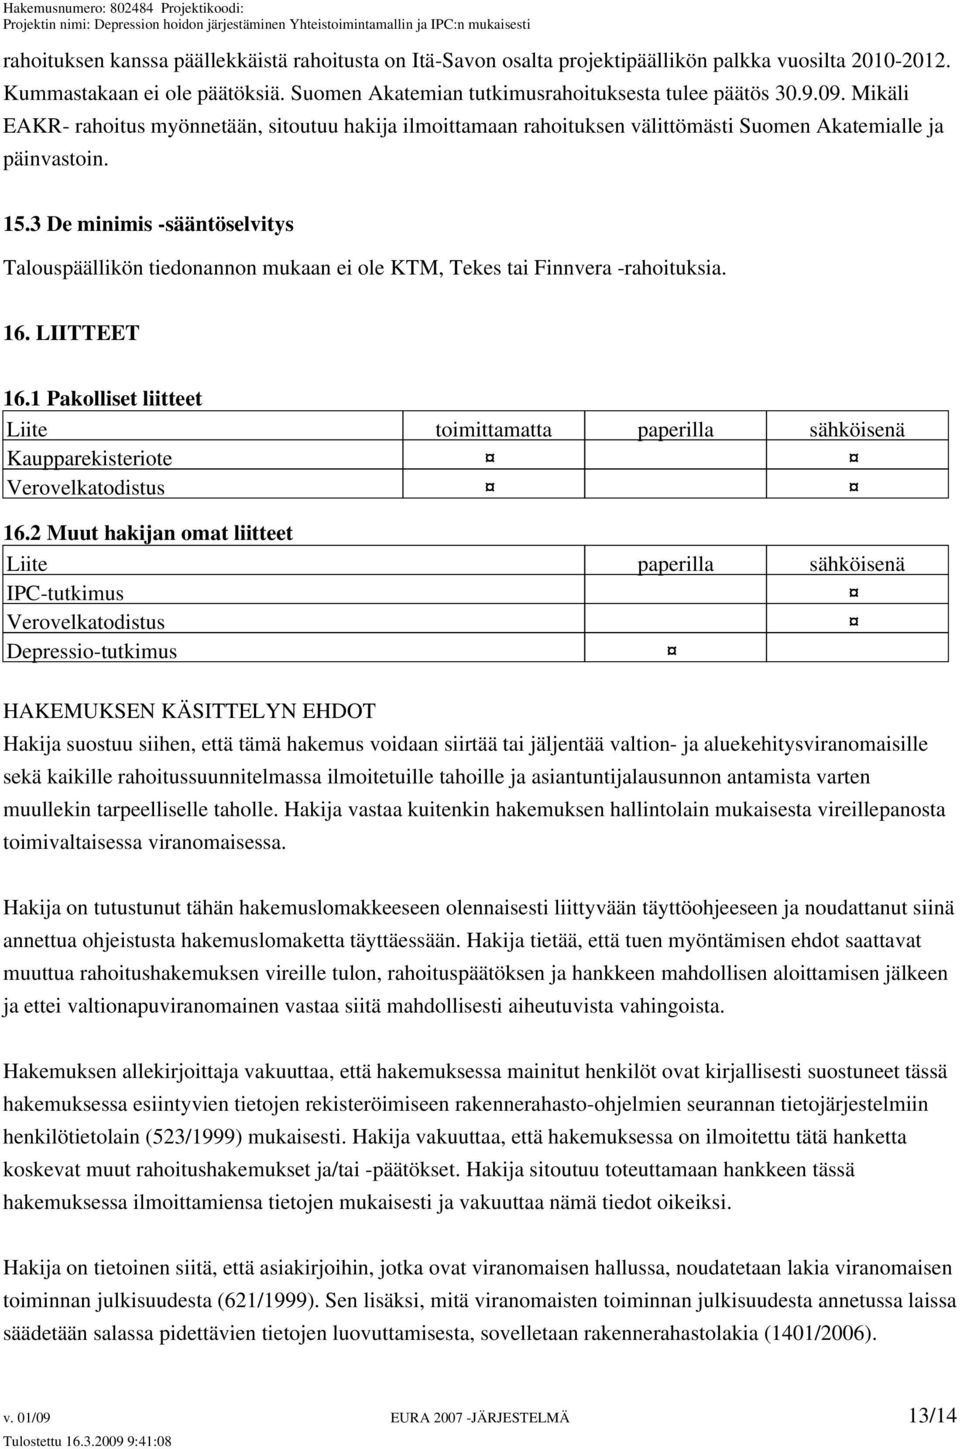 3 De minimis -sääntöselvitys Talouspäällikön tiedonannon mukaan ei ole KTM, Tekes tai Finnvera -rahoituksia. 16. LIITTEET 16.